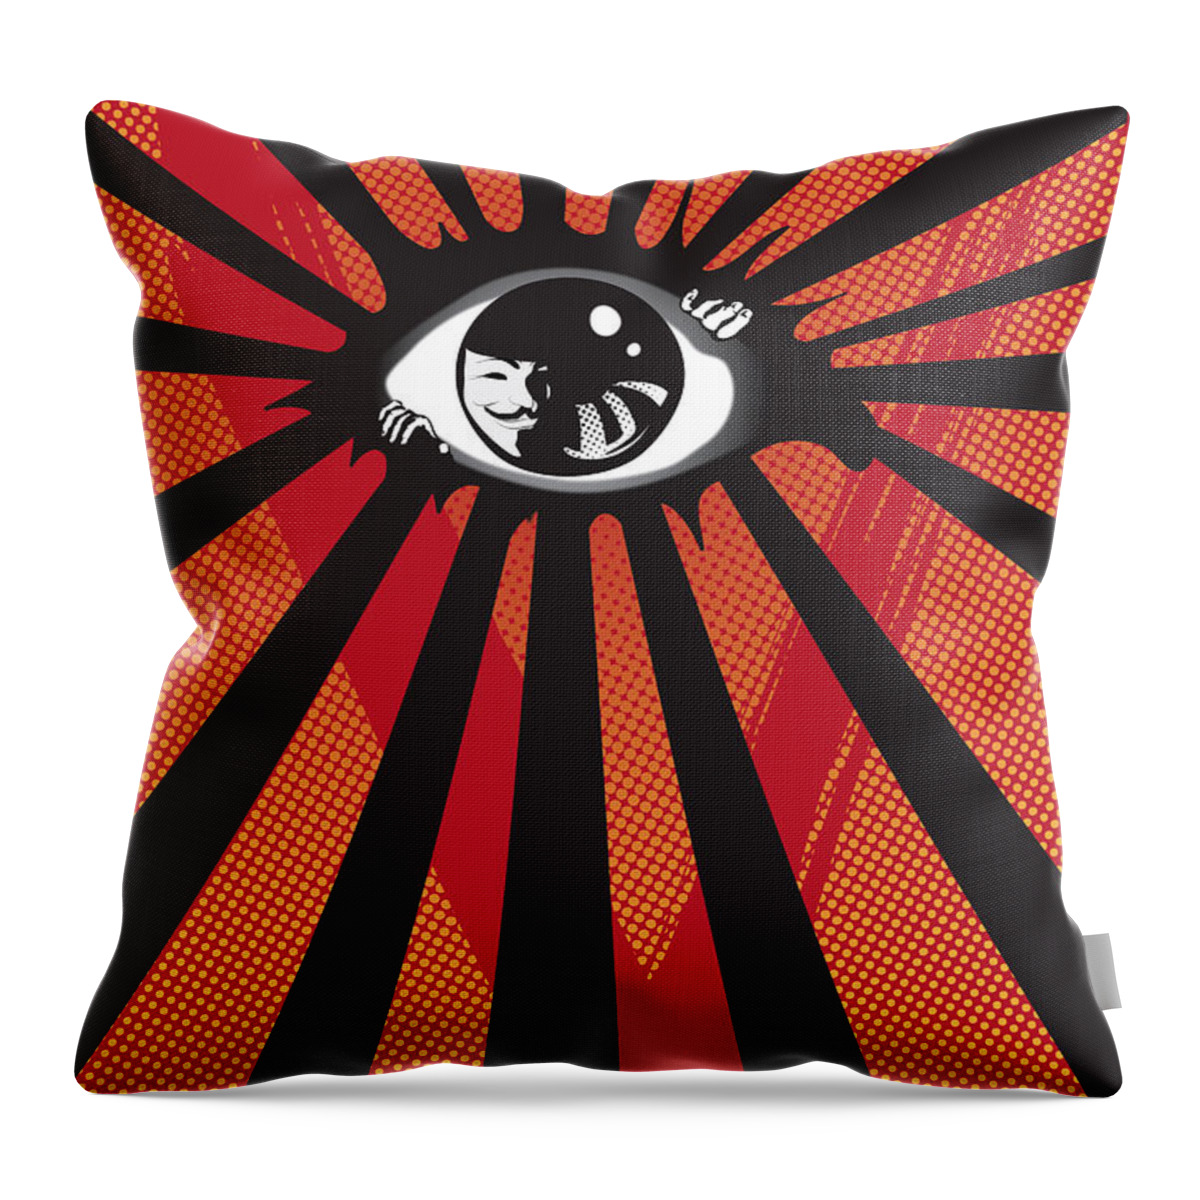 Eyes Throw Pillow featuring the digital art Vendetta2 eyeball by Sassan Filsoof